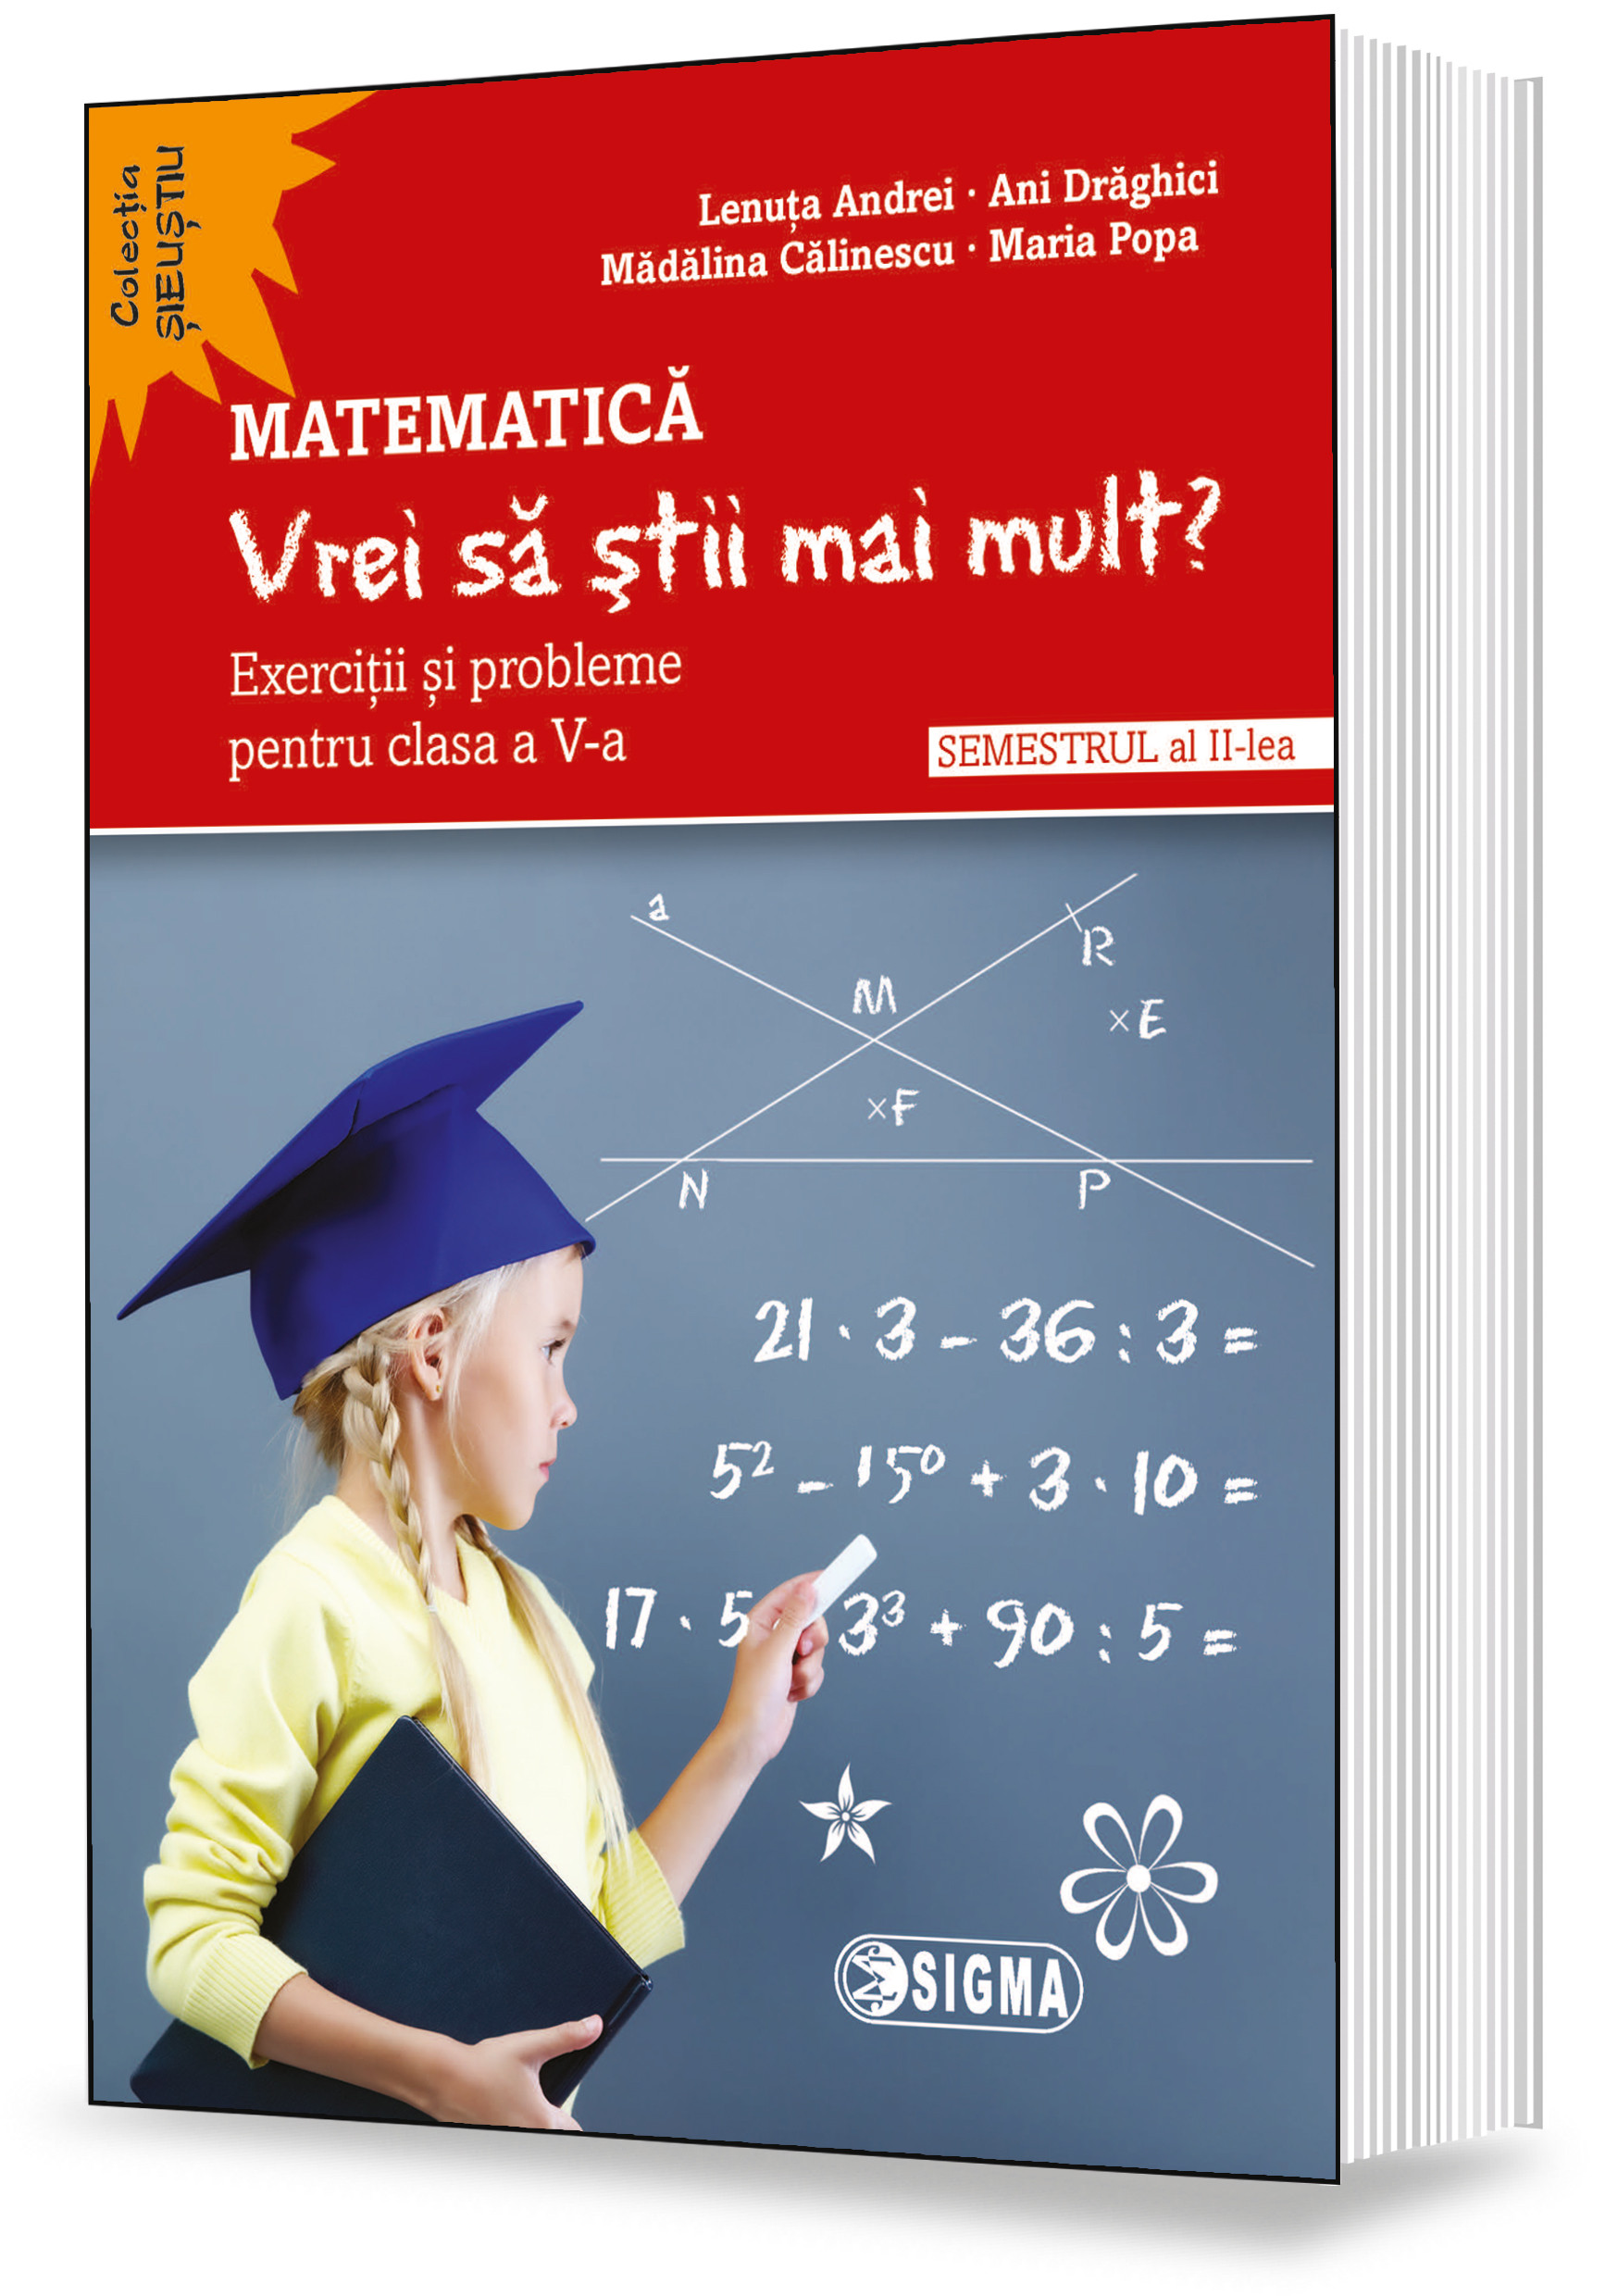 Matematica. „Vrei sa stii mai mult?” | Lenuta Andrei, Ani Draghici, Maria Popa